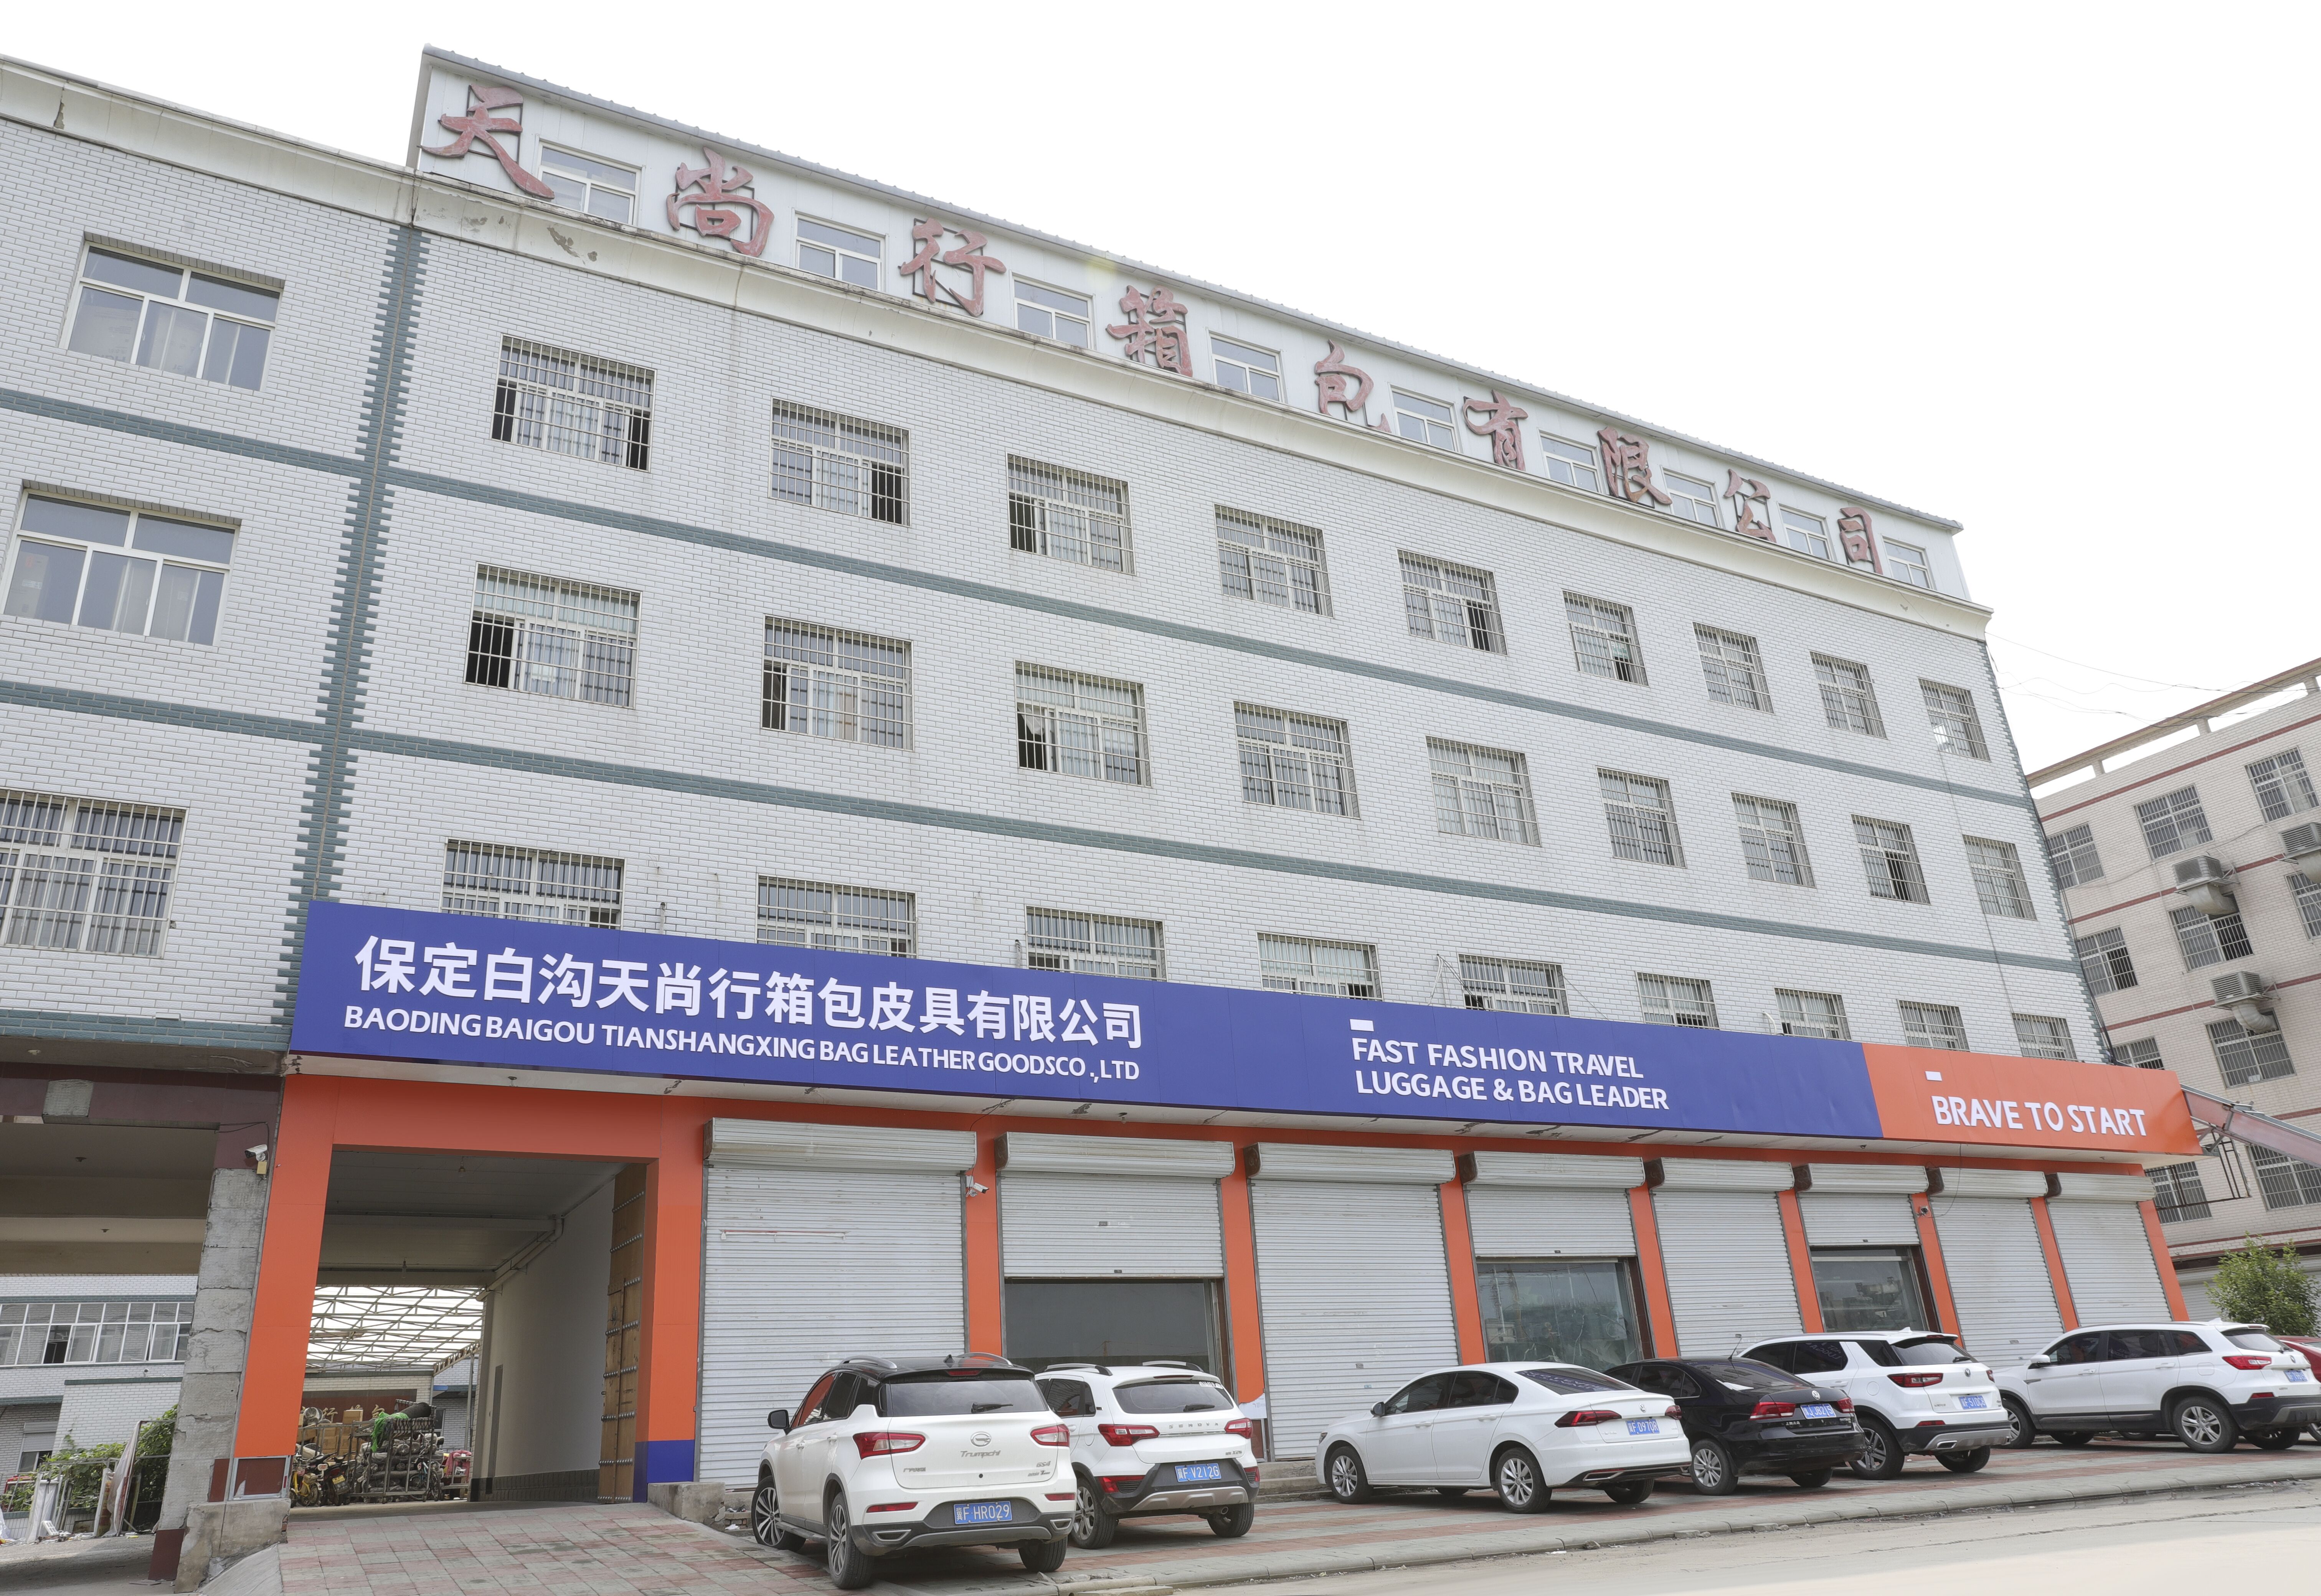 တရုတ်နိုင်ငံမှာ ကျောပိုးအိတ်ထုတ်လုပ်တဲ့ စက်ရုံက ဘယ်မှာလဲ။